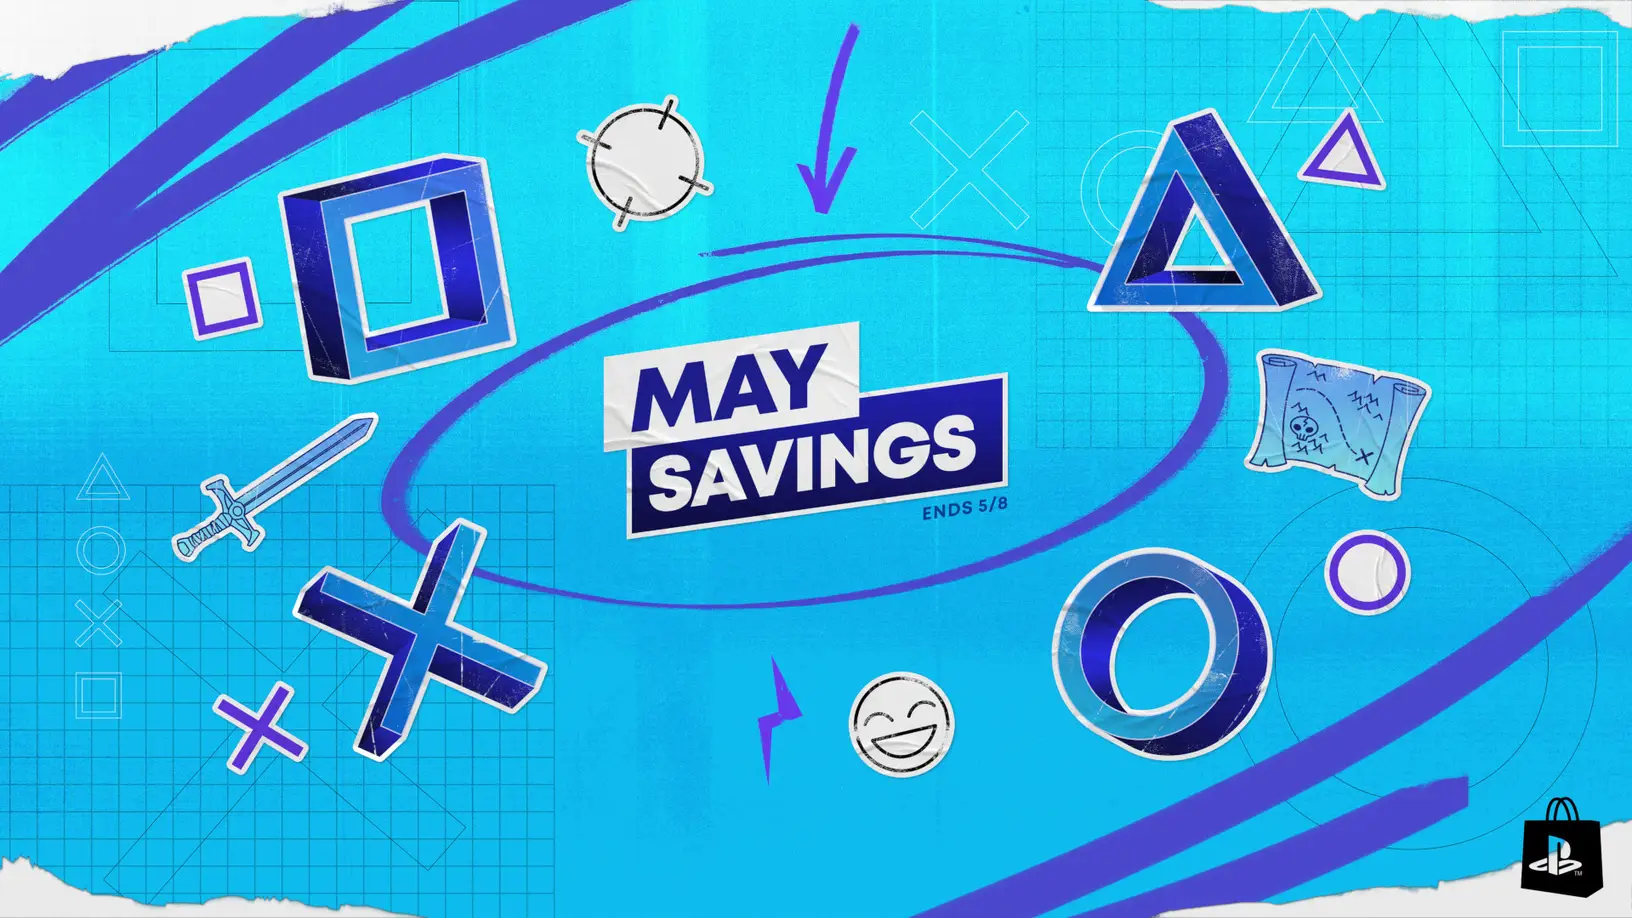 Aquí están los May Savings para descargar juegos de PS5 más baratos